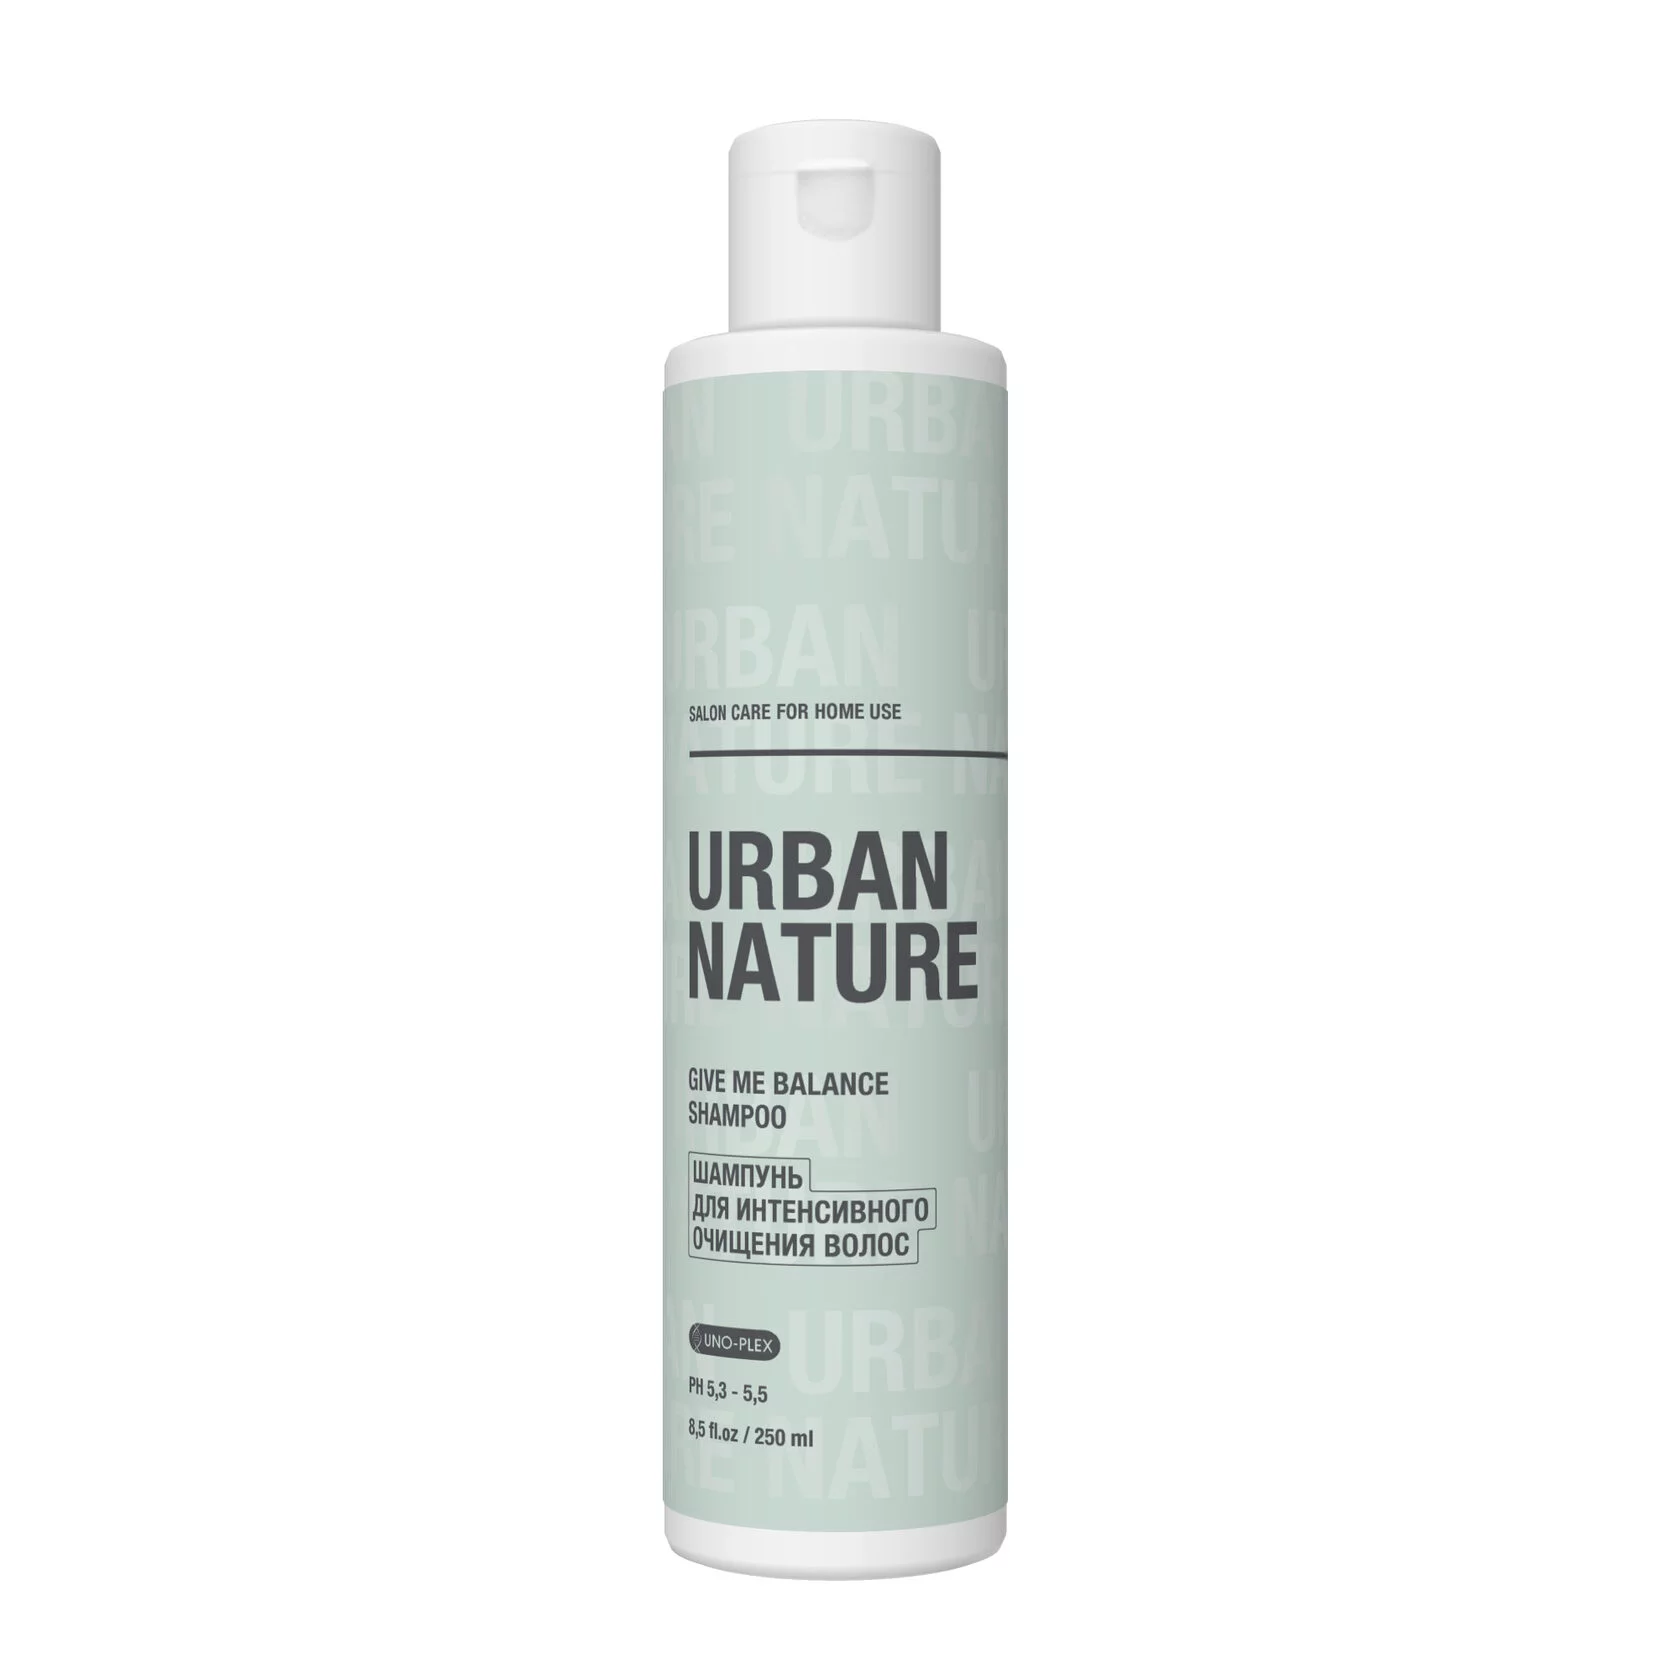 Шампунь для интенсивного очищения волос Urban Nature Give Me Balance Shampoo, 250 мл